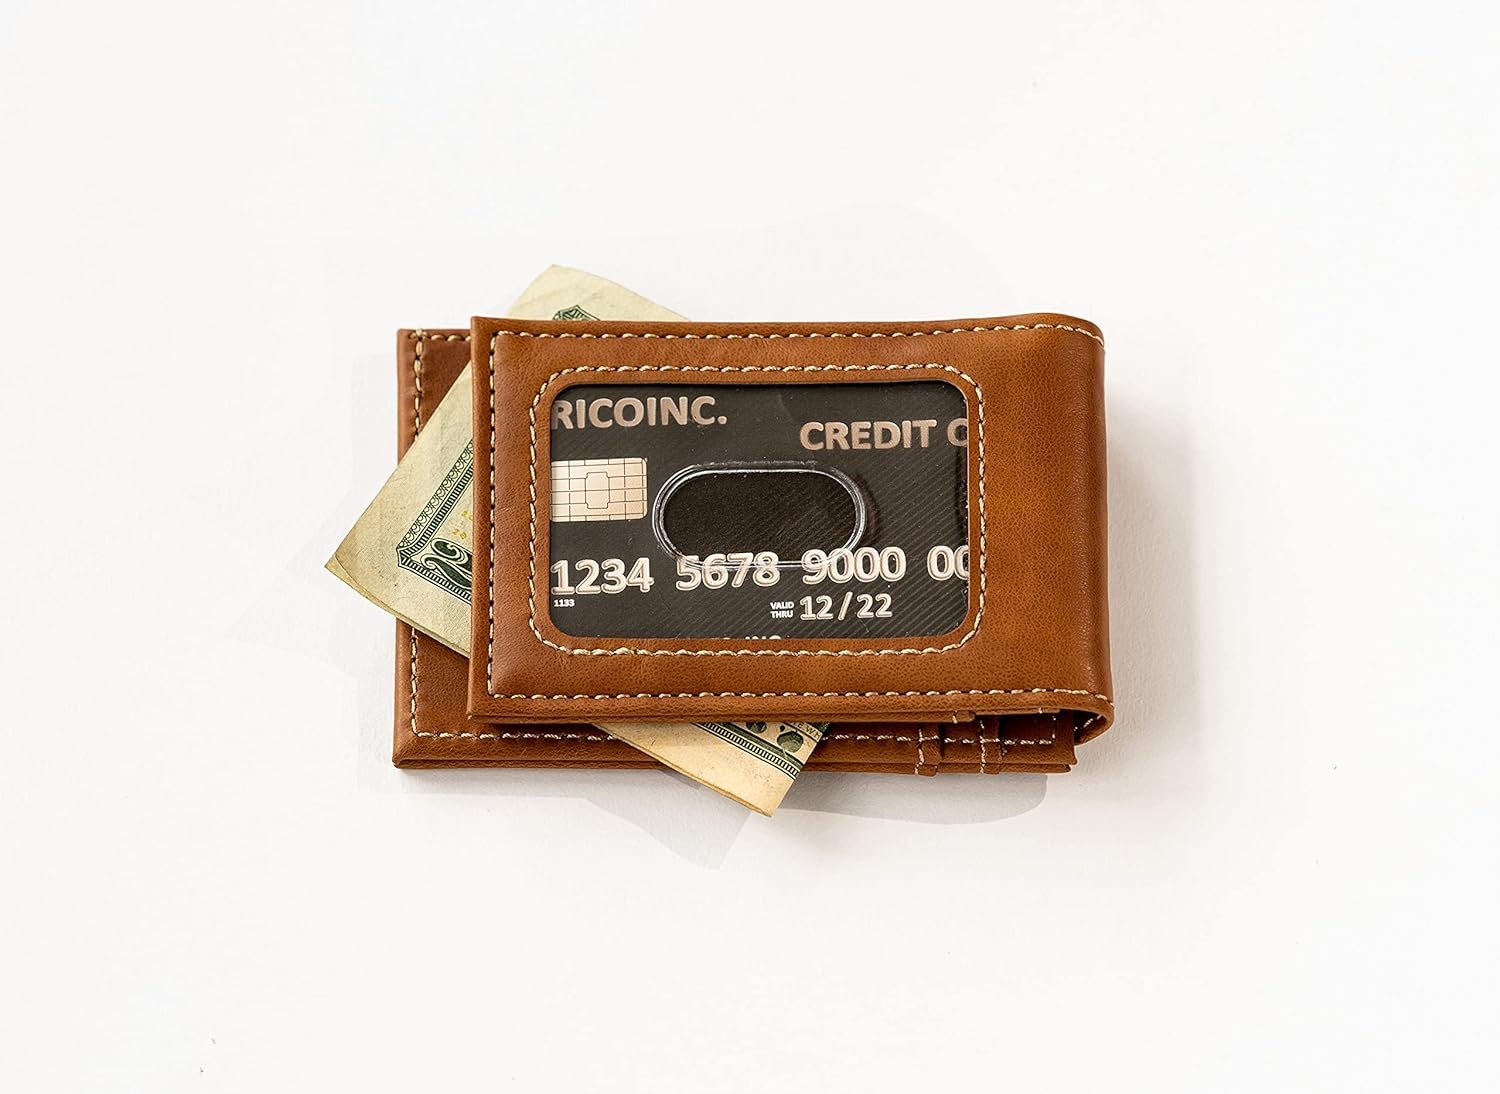 Cleveland Browns Premium Brown Leather Wallet, Front Pocket Magnetic Money Clip, Laser Engraved, Vegan